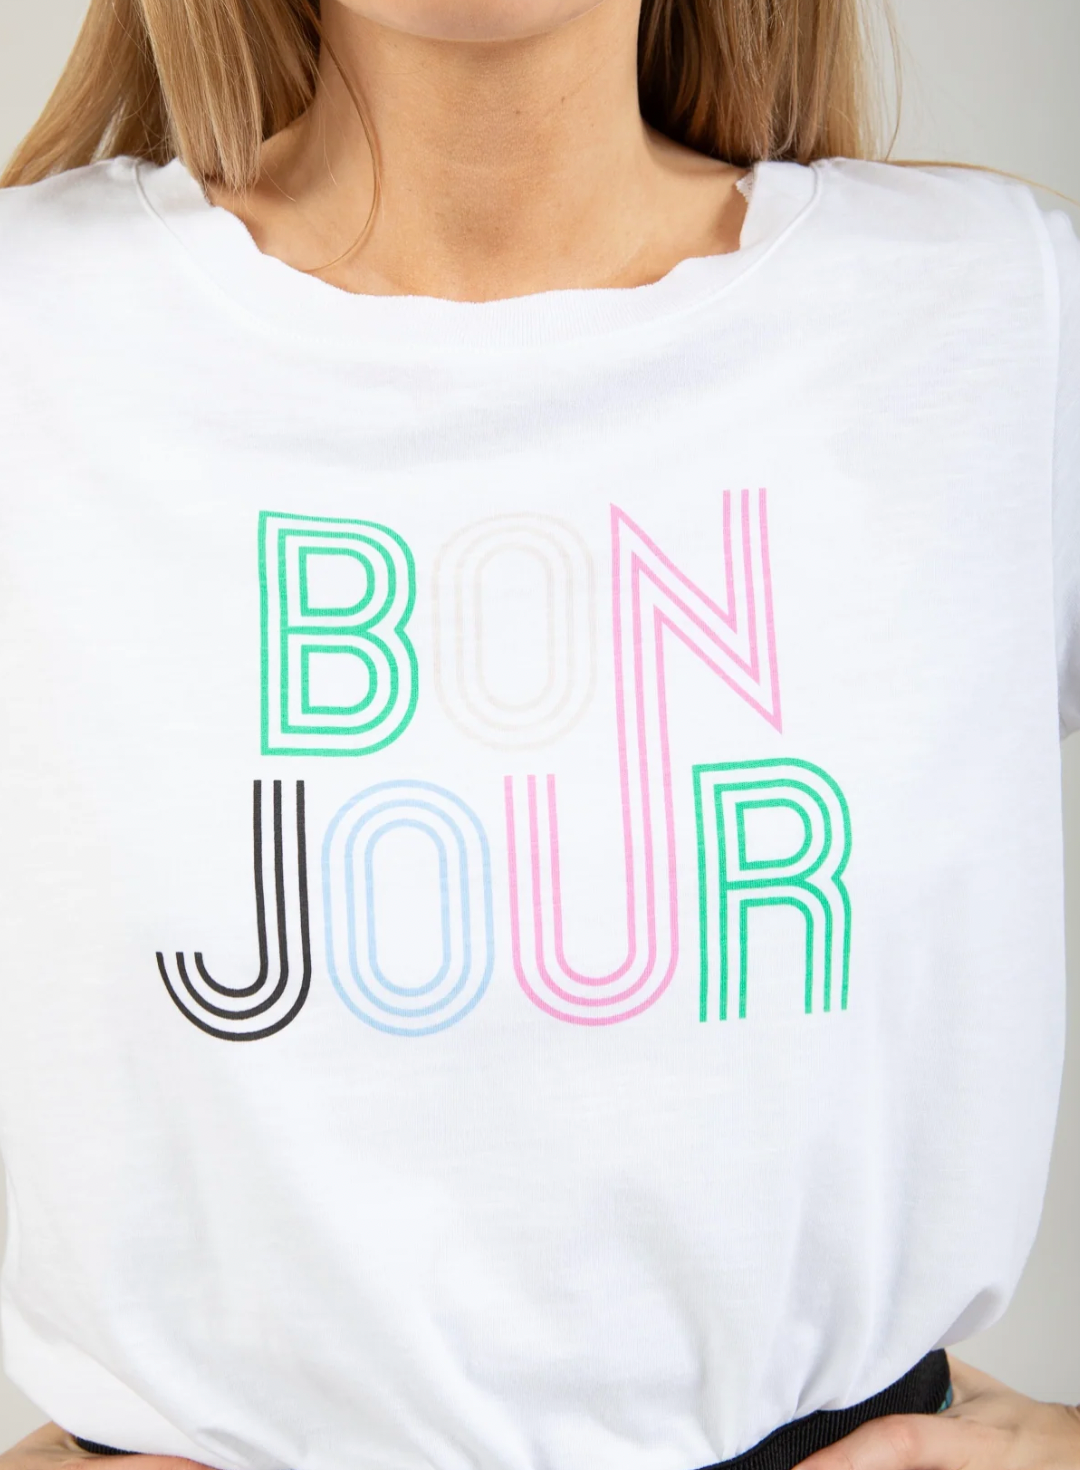 Coster Copenhagen White T-Shirt with 'Bonjour' Logo, 242-1230